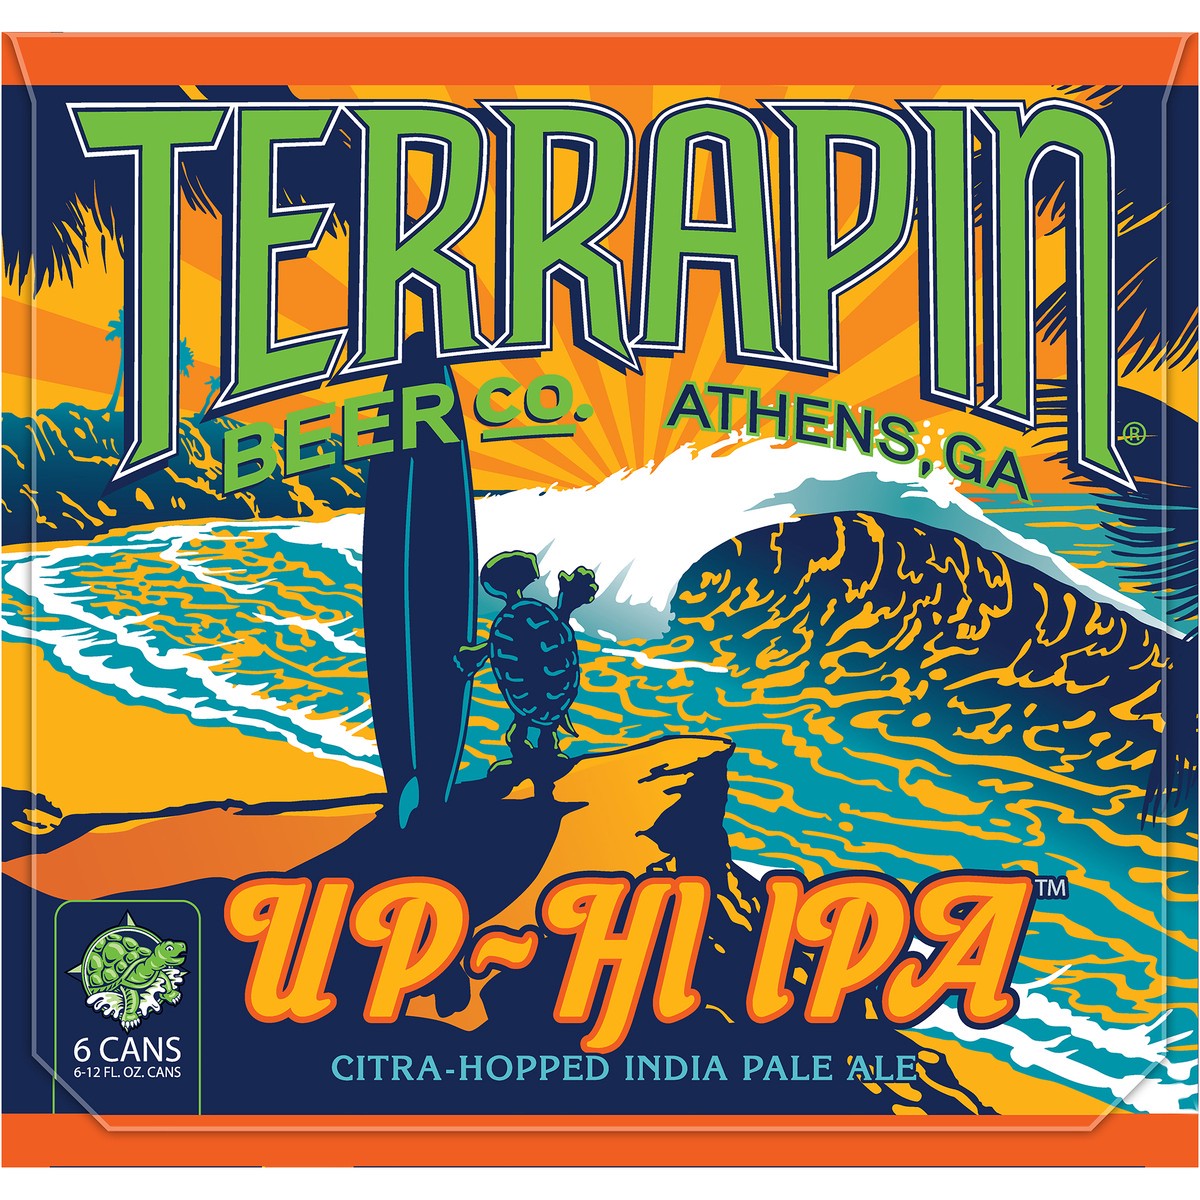 slide 9 of 9, Terrapin Beer Co. Craft Beer, 12 fl oz